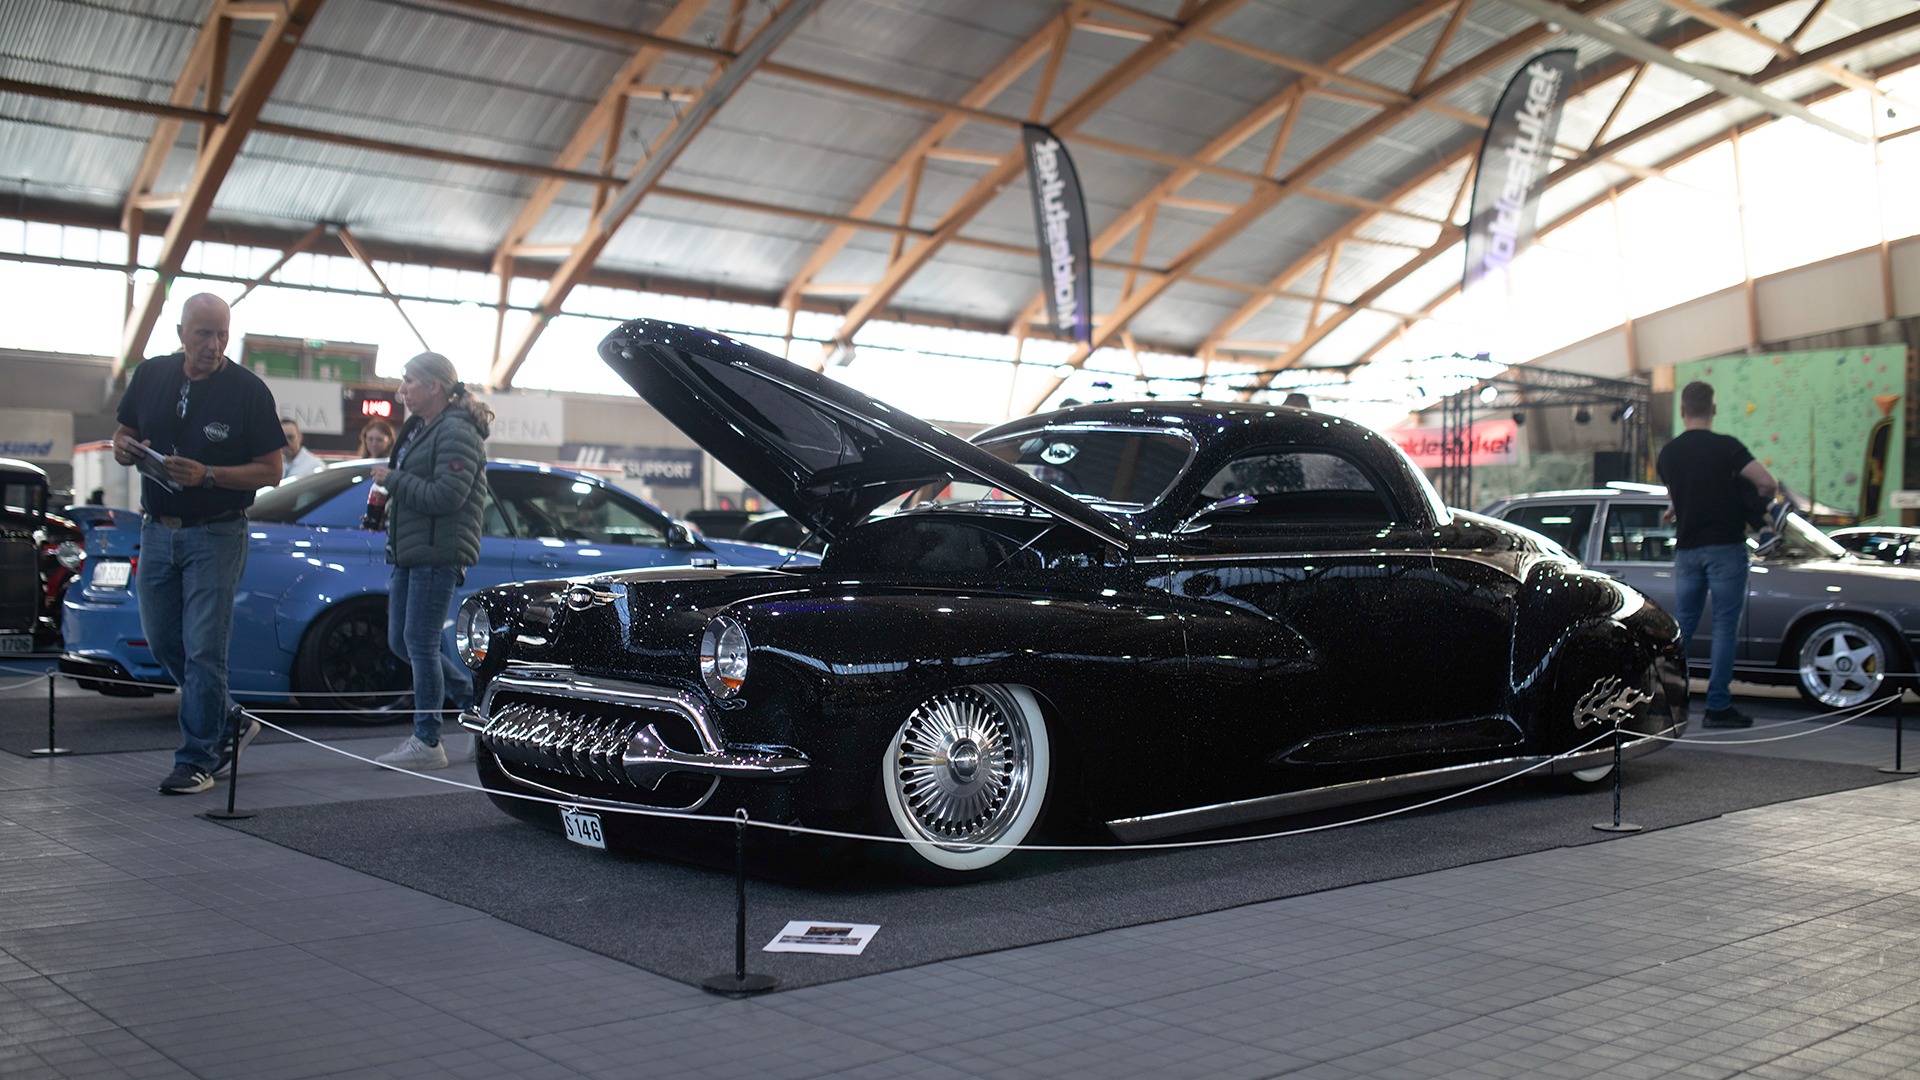 Norges største custom-konge, Einar Valsjø, sitt gamle bygg «Shadow» var på plass. Bilen er i utgangspunktet en 1946 Dodge Coupe, og har mildt sagt fått gjennomgått en deilig ombygging.